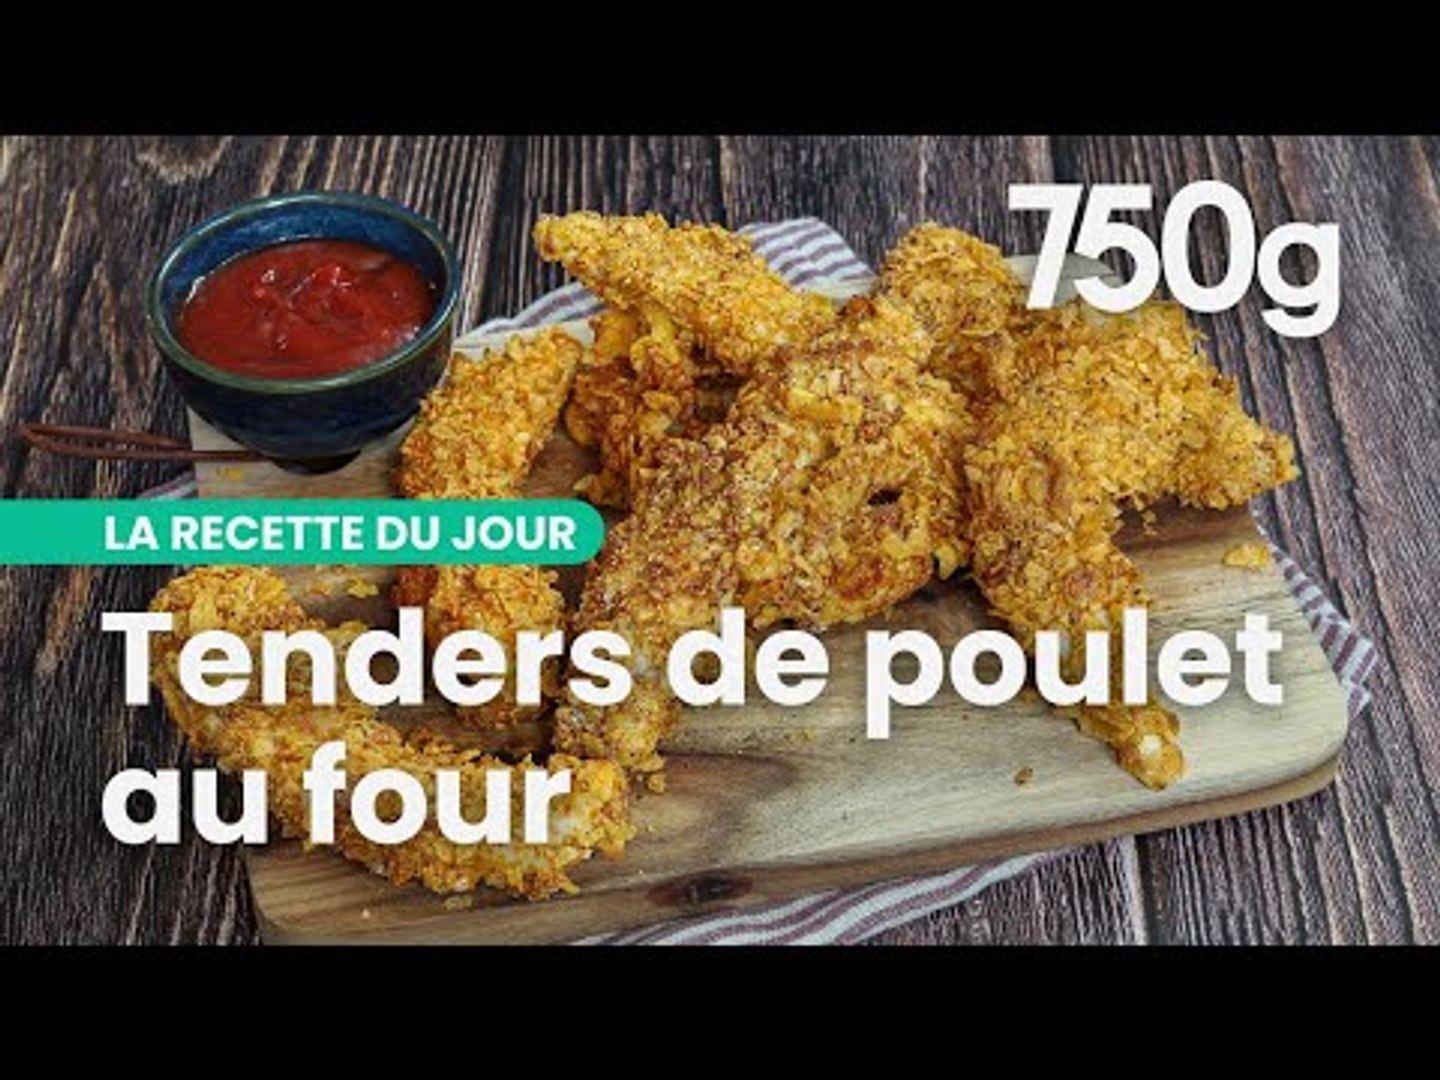 Recette des tenders de poulet au four - 750g - Vidéo Dailymotion